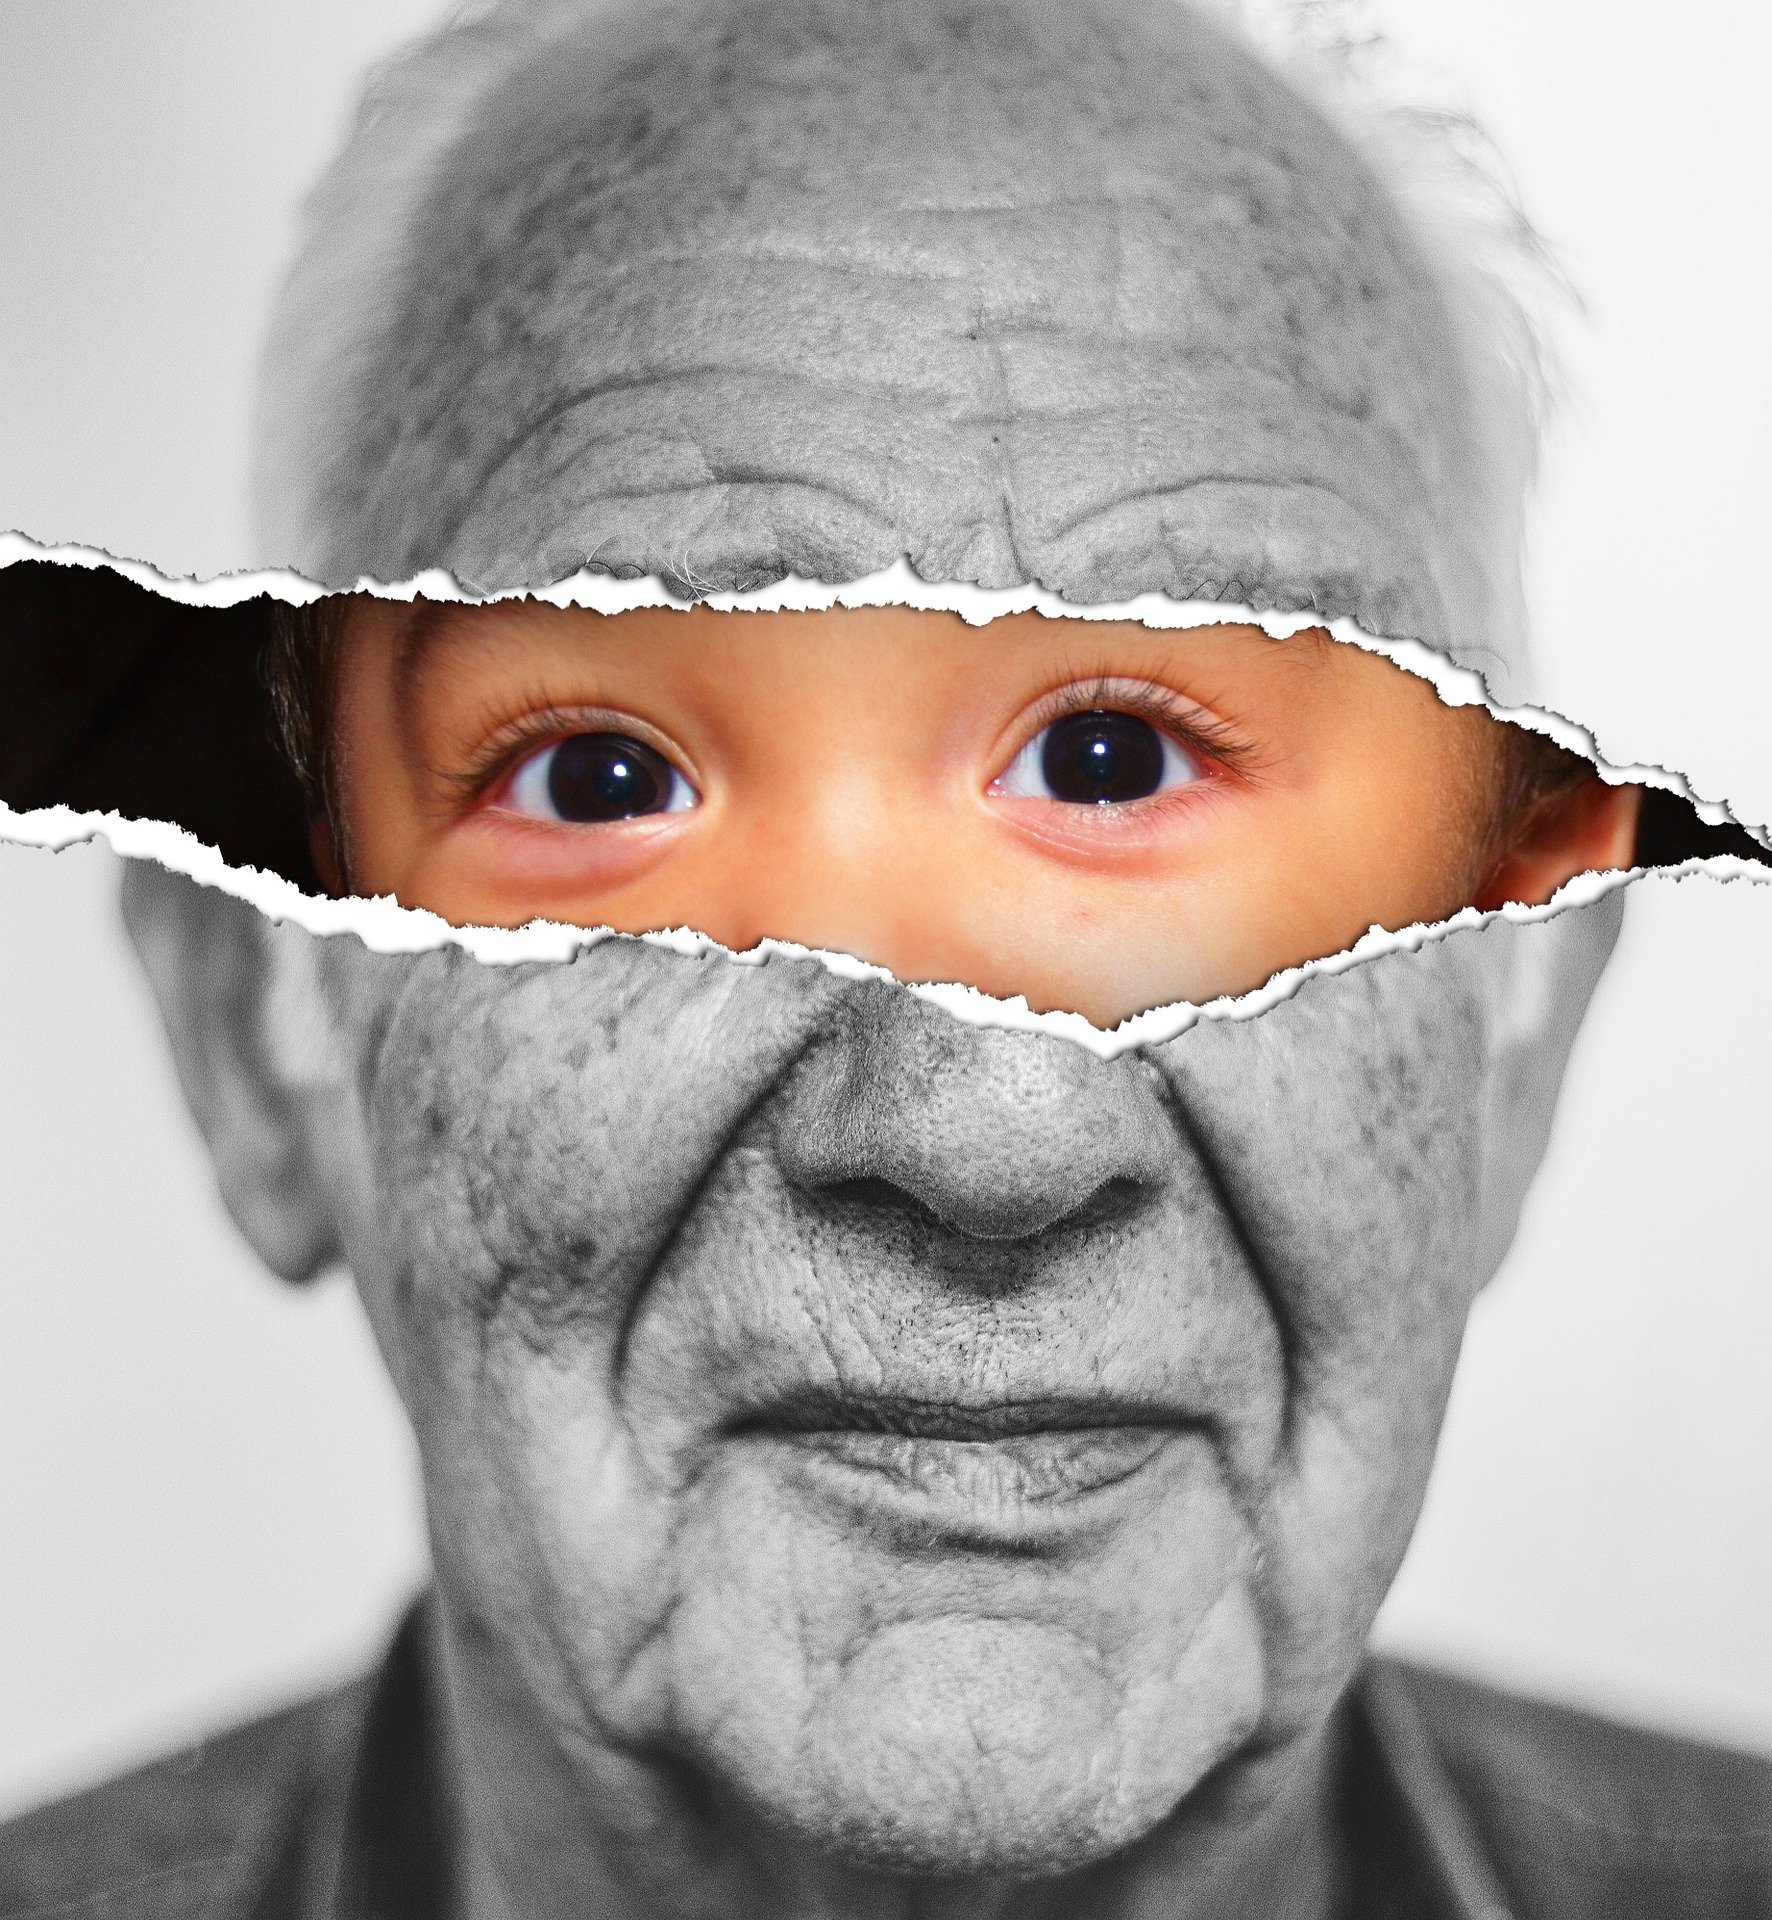 Longévité: en 2100 il sera possible de vivre jusqu'à 125 ans